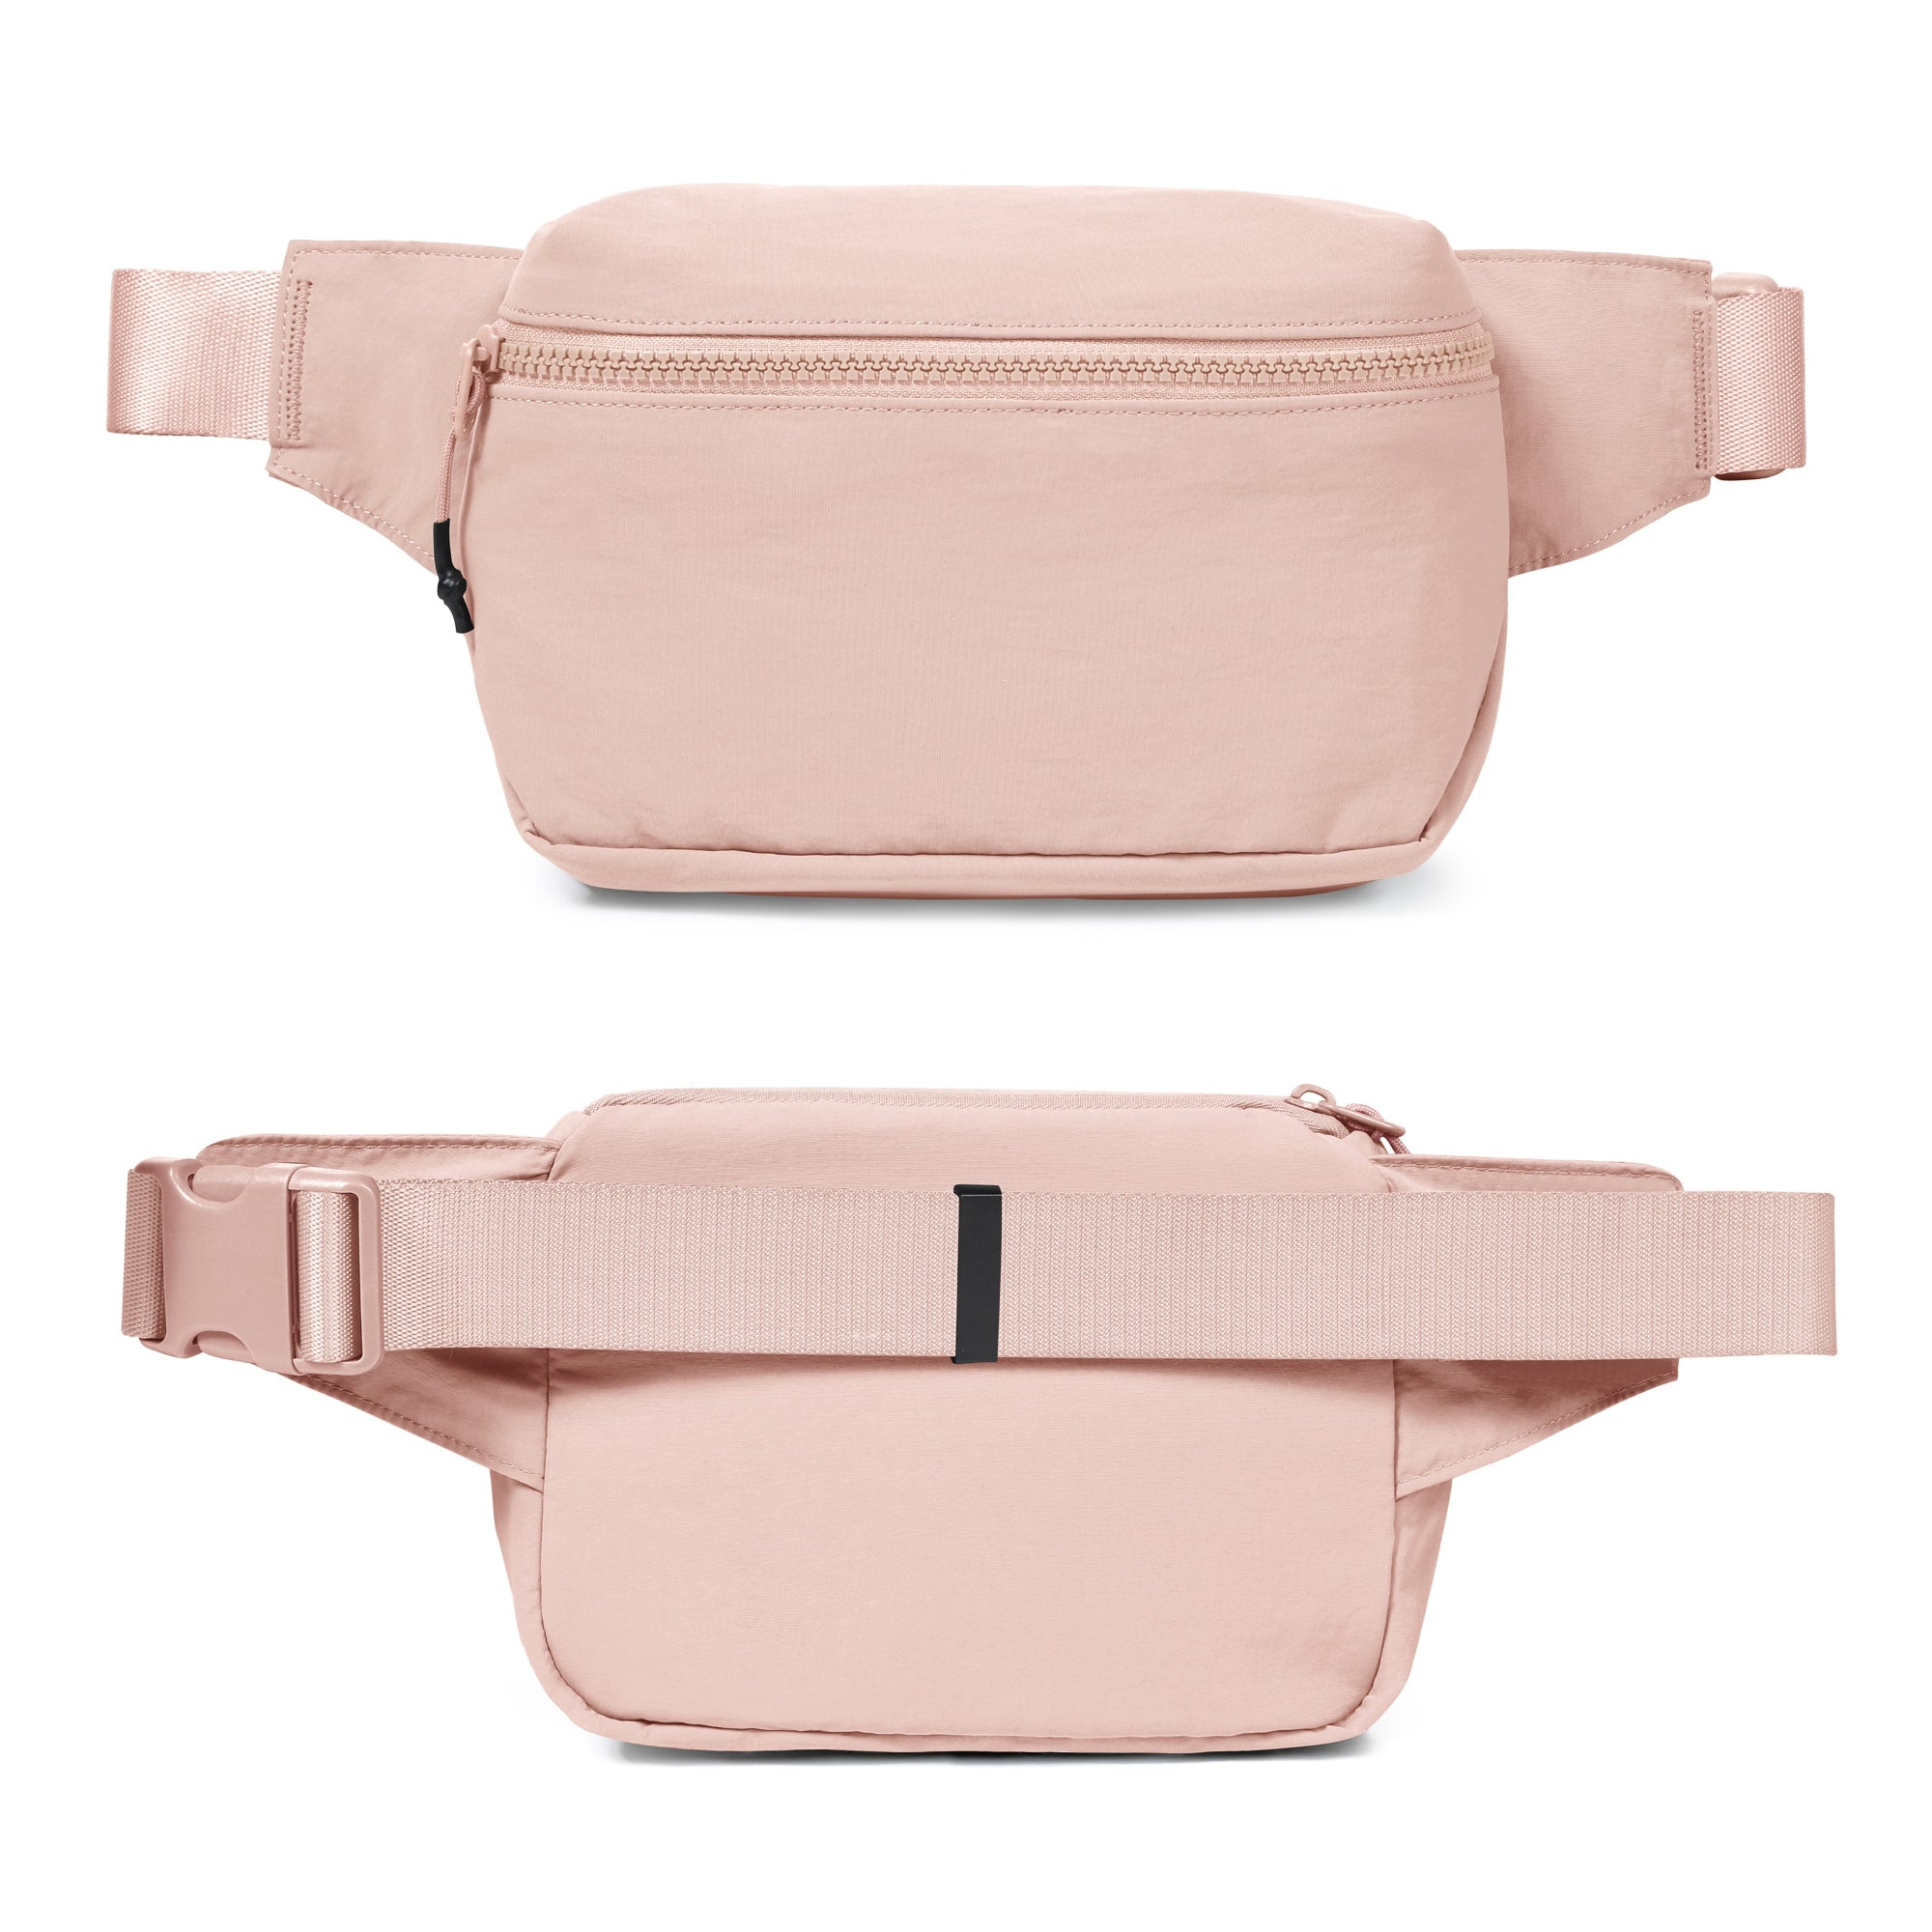  2L Belt Bag with Adjustable Strap - ododos